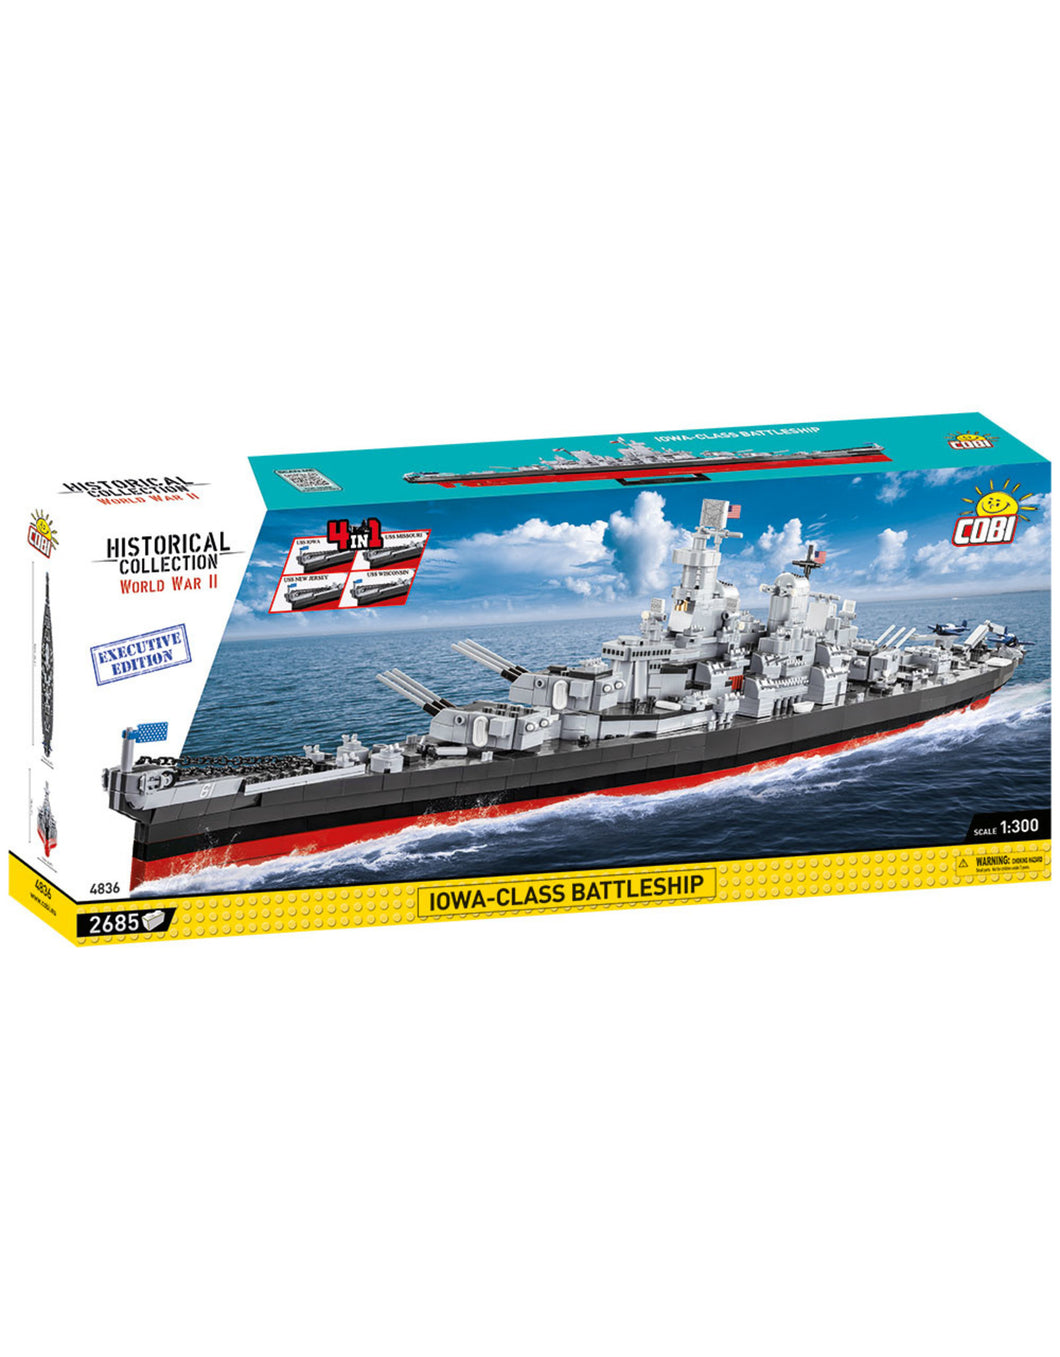 COBI 4836 - Executive Edition Iowa-Class Battleship